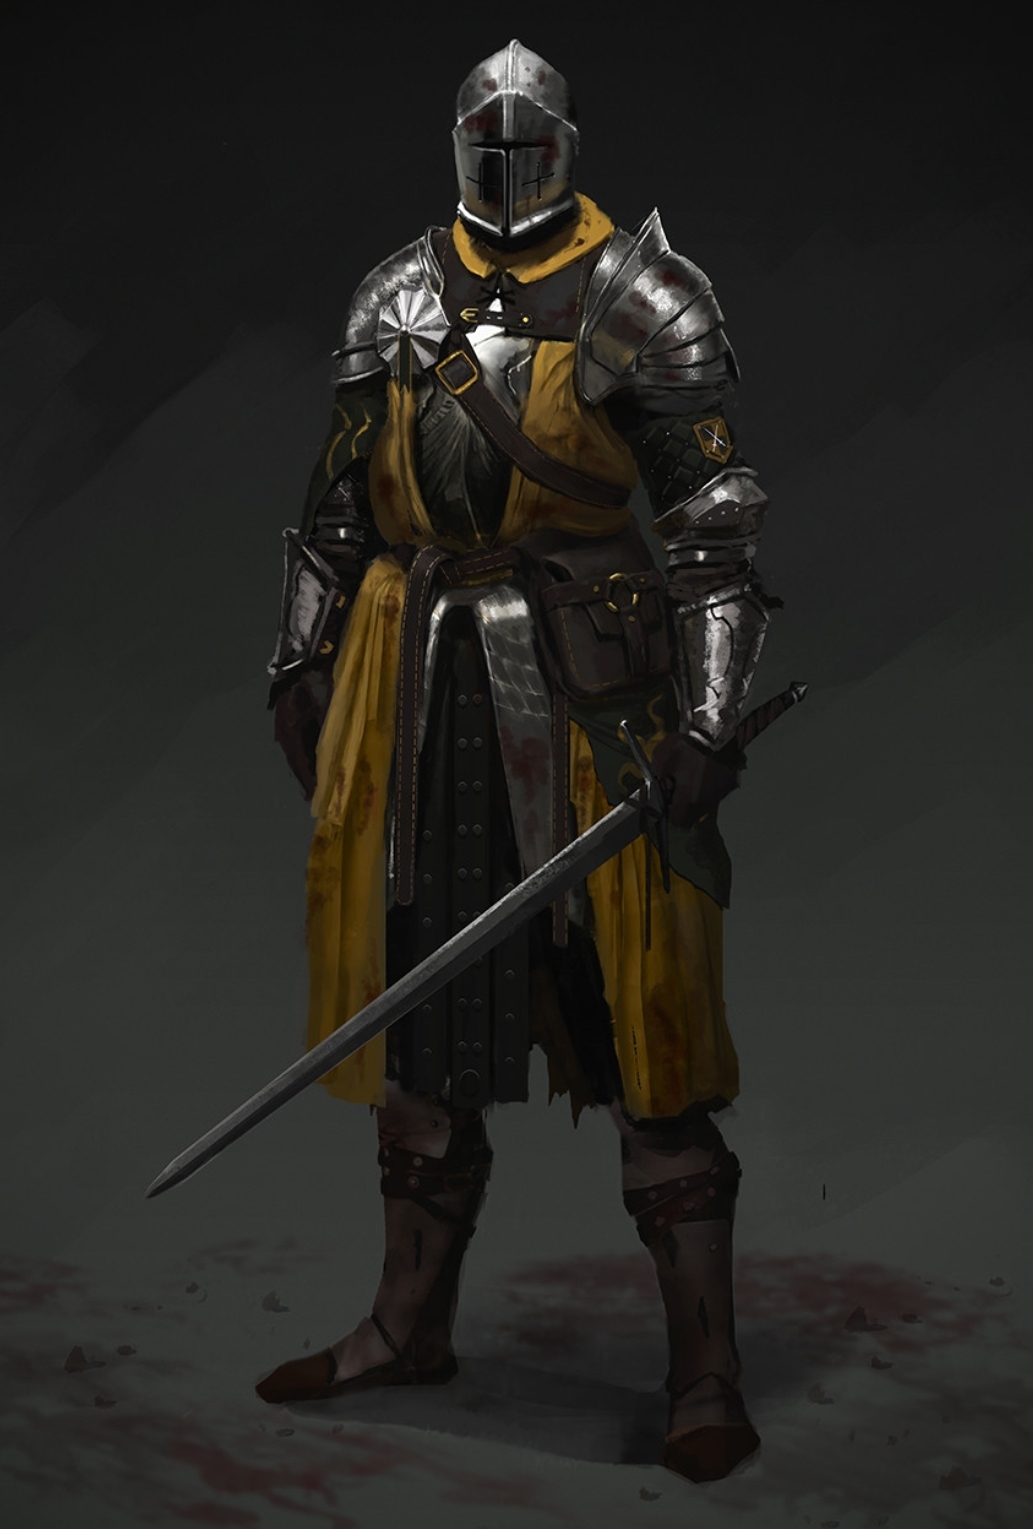 KnightsTemplar